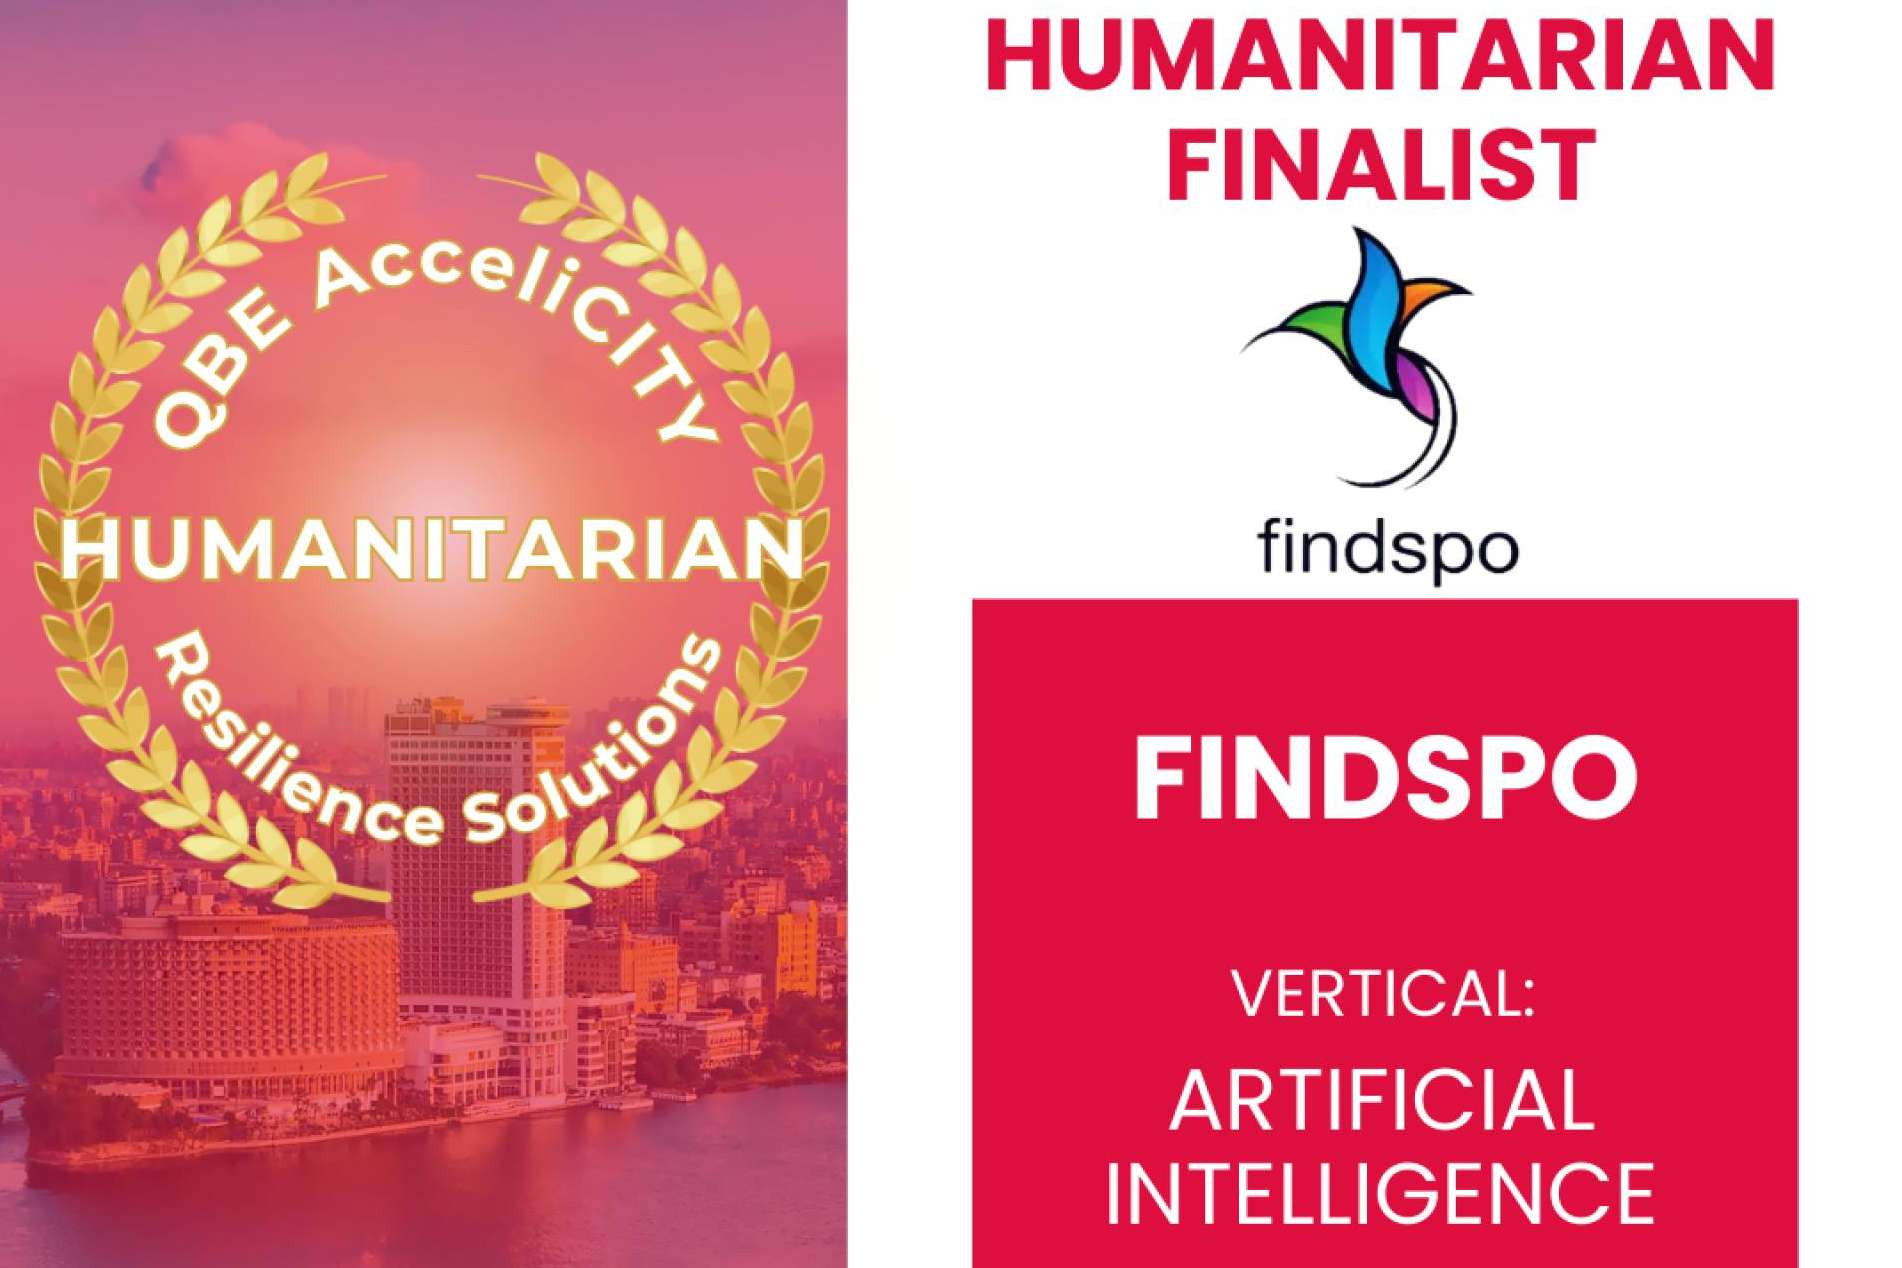  Humanitech anunció los finalistas del QBE AcceliCITY Resilience Challenge, Findspo entre ellos 